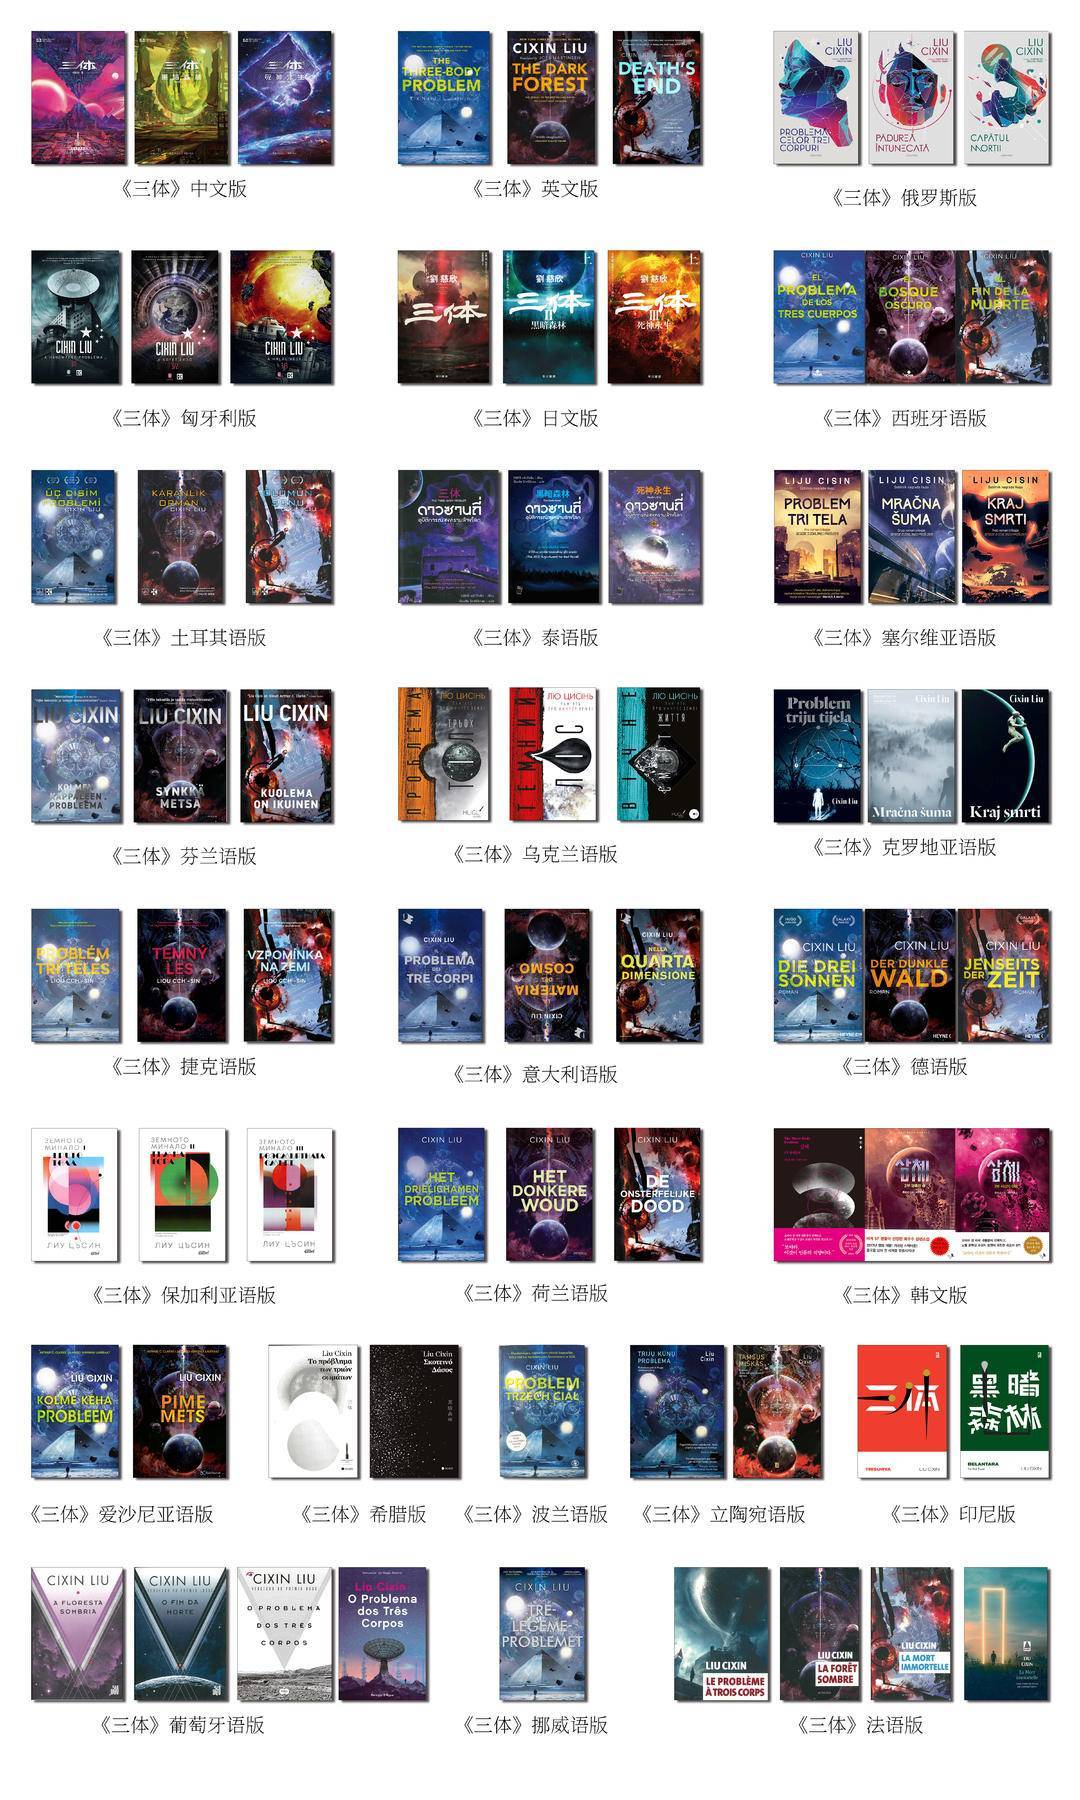 苹果电脑日版变英文版了:刘慈欣单独写给美版《三体》的后记火了，背后的“三体出海版图”由30多个文学语种组成